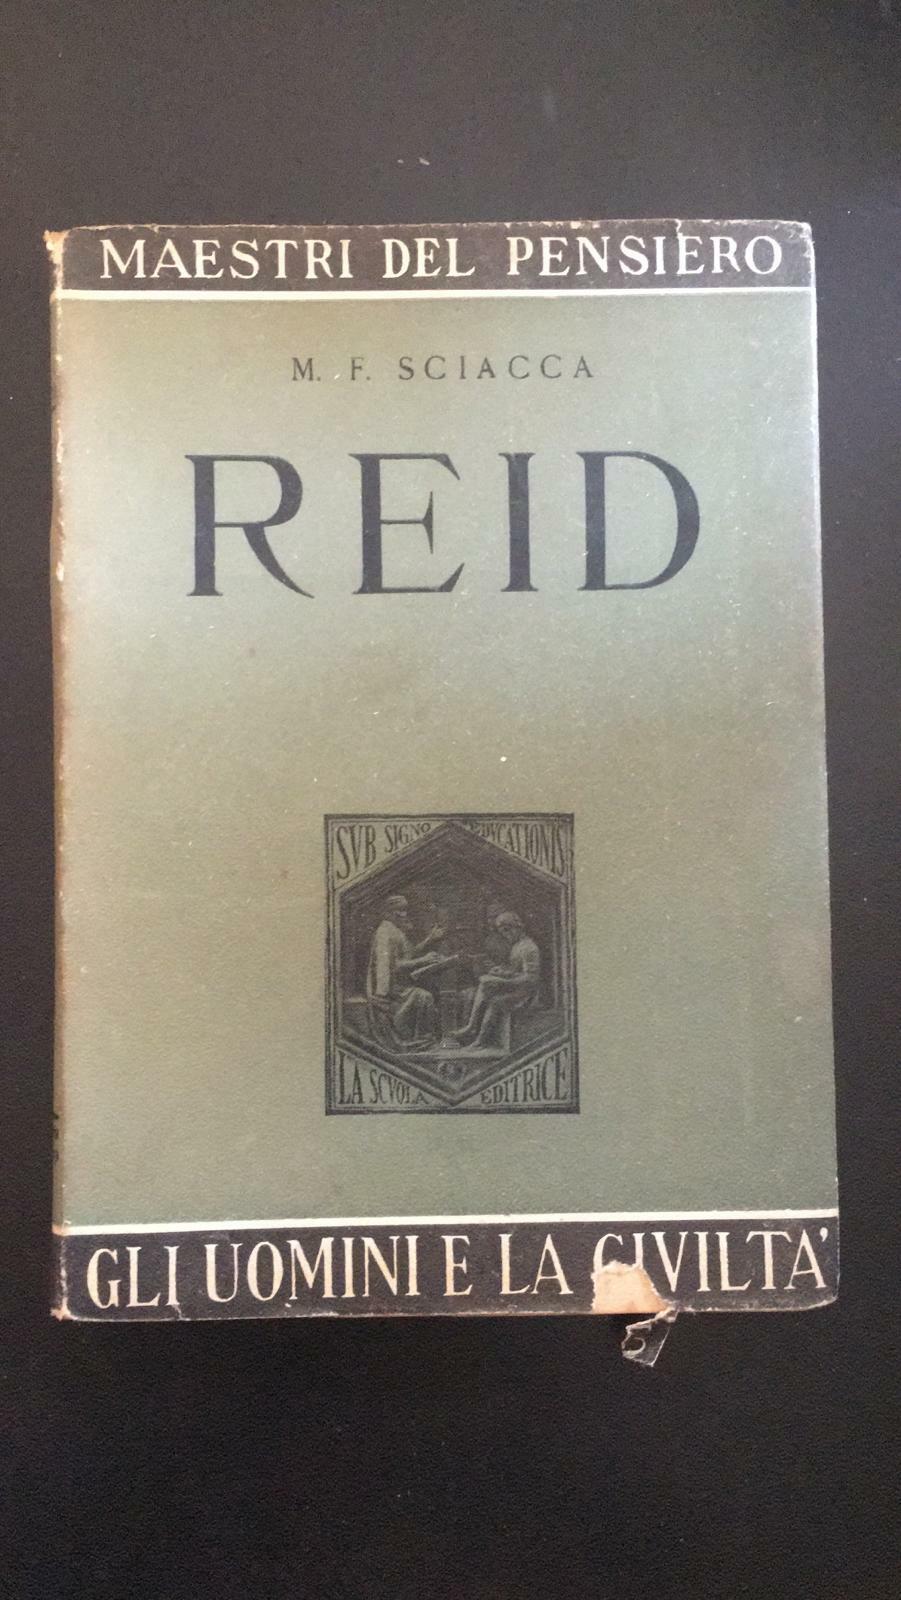 Reid  - M.F. Sciacca,  La Scuola - P